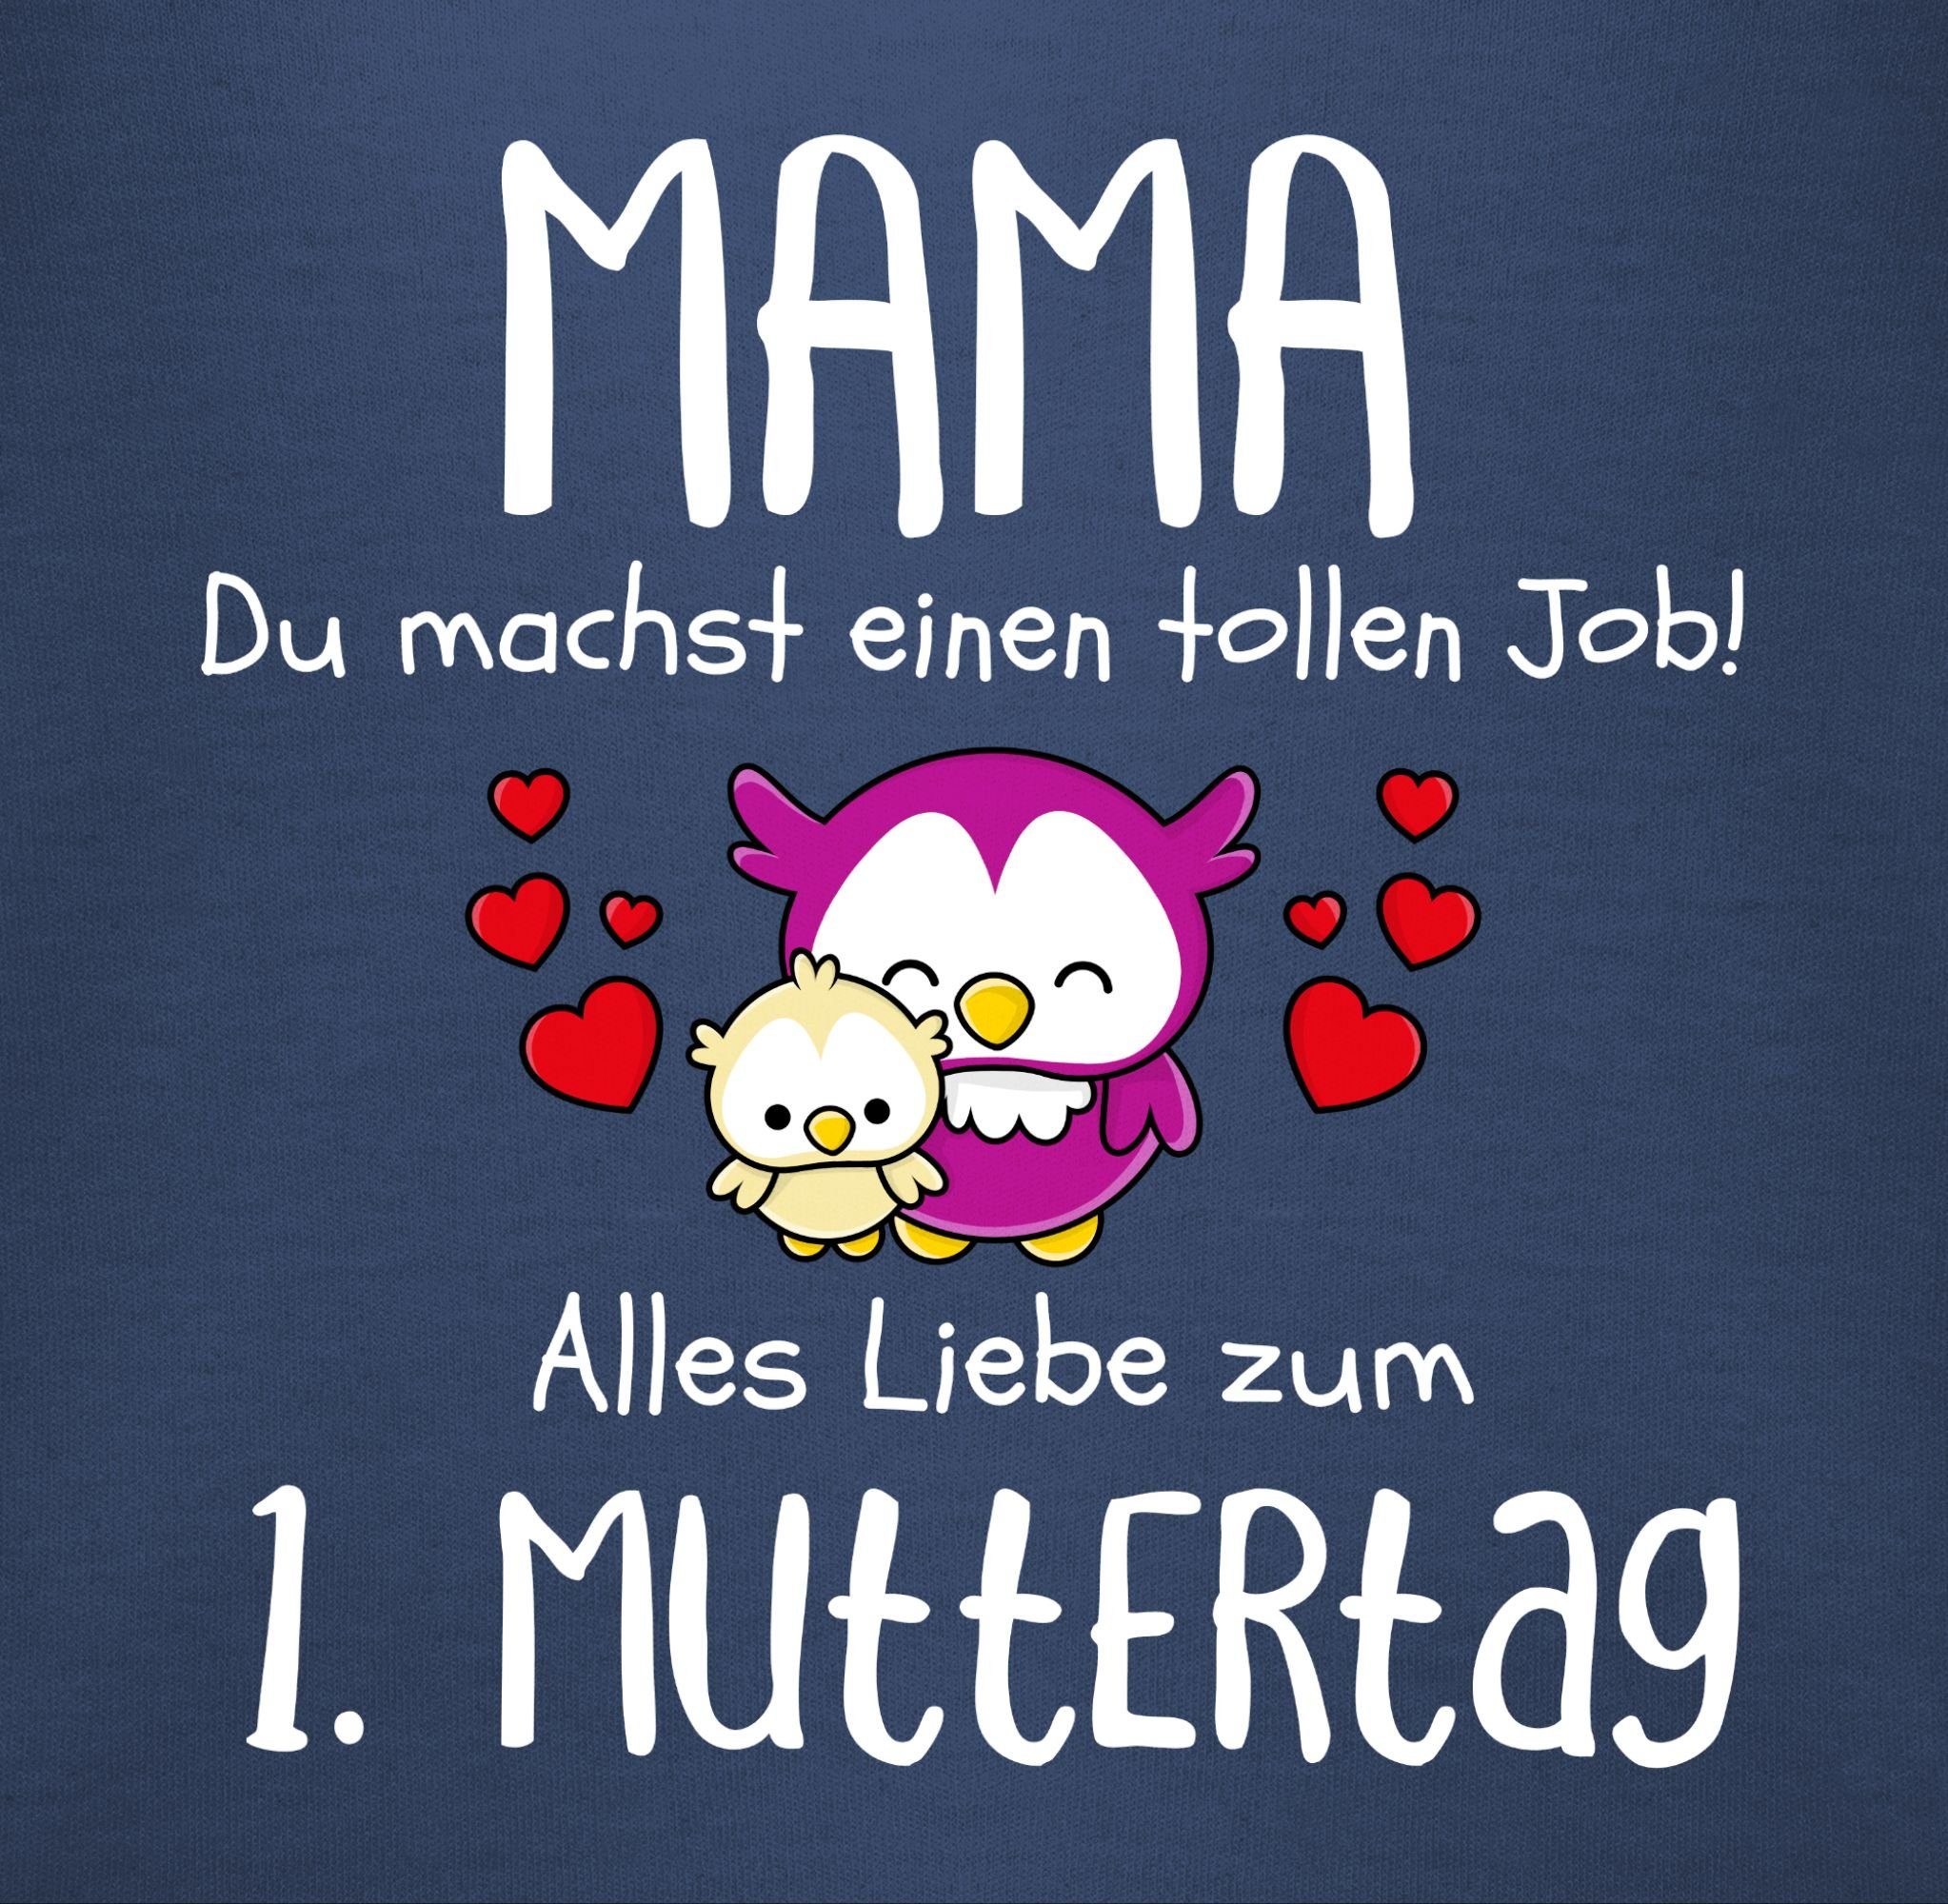 I (1-tlg) Job Blau 1. 2 Muttertag machst Muttertagsgeschenk einen Shirtbody tollen Mama du Navy Shirtracer